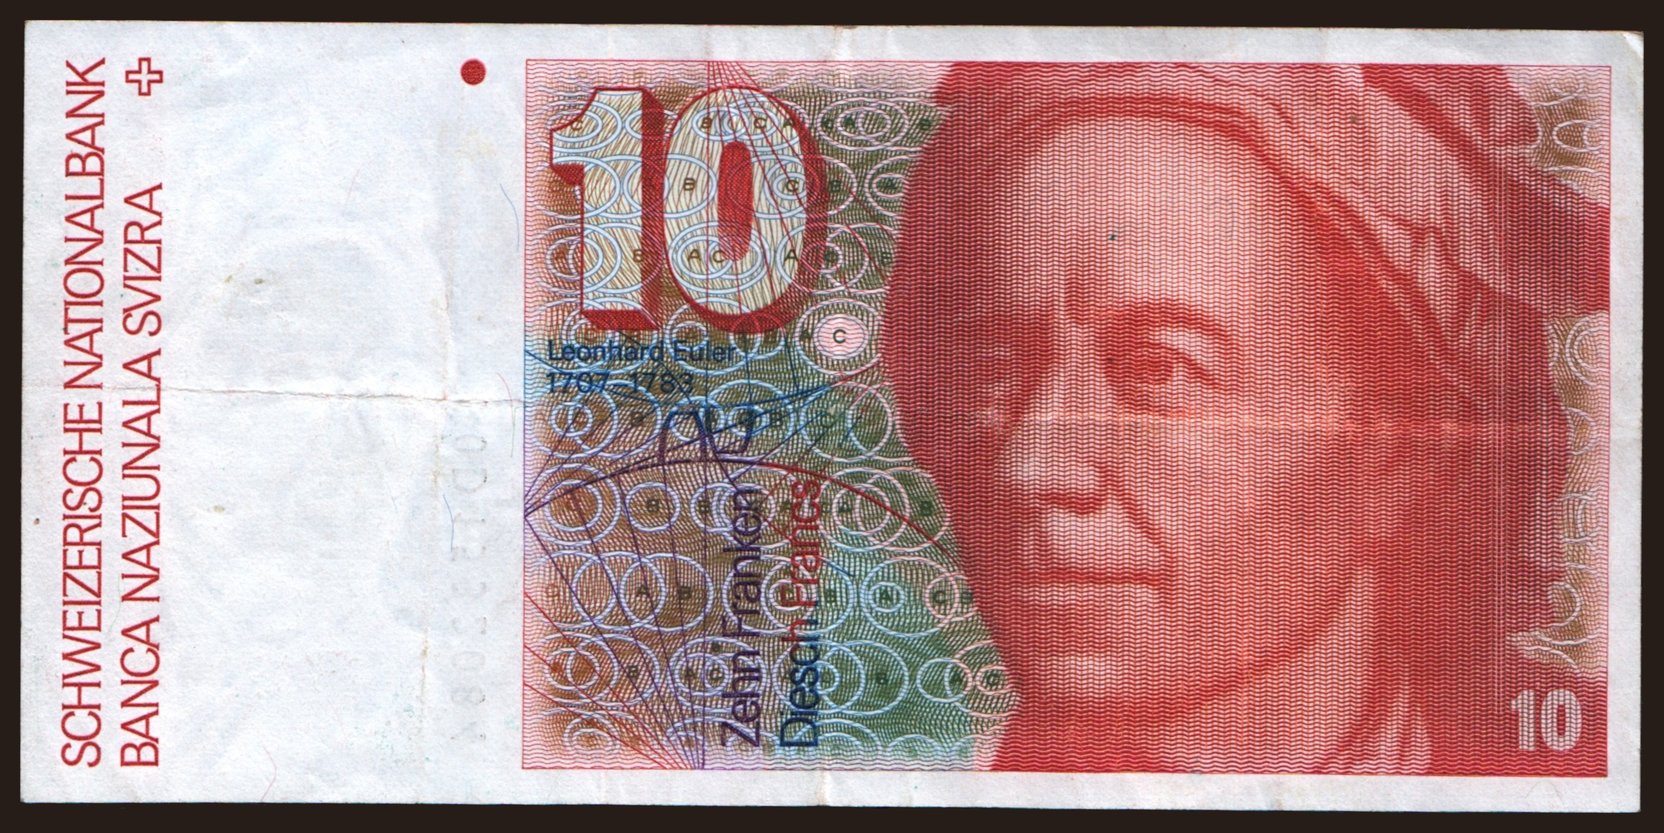 10 francs, 1990